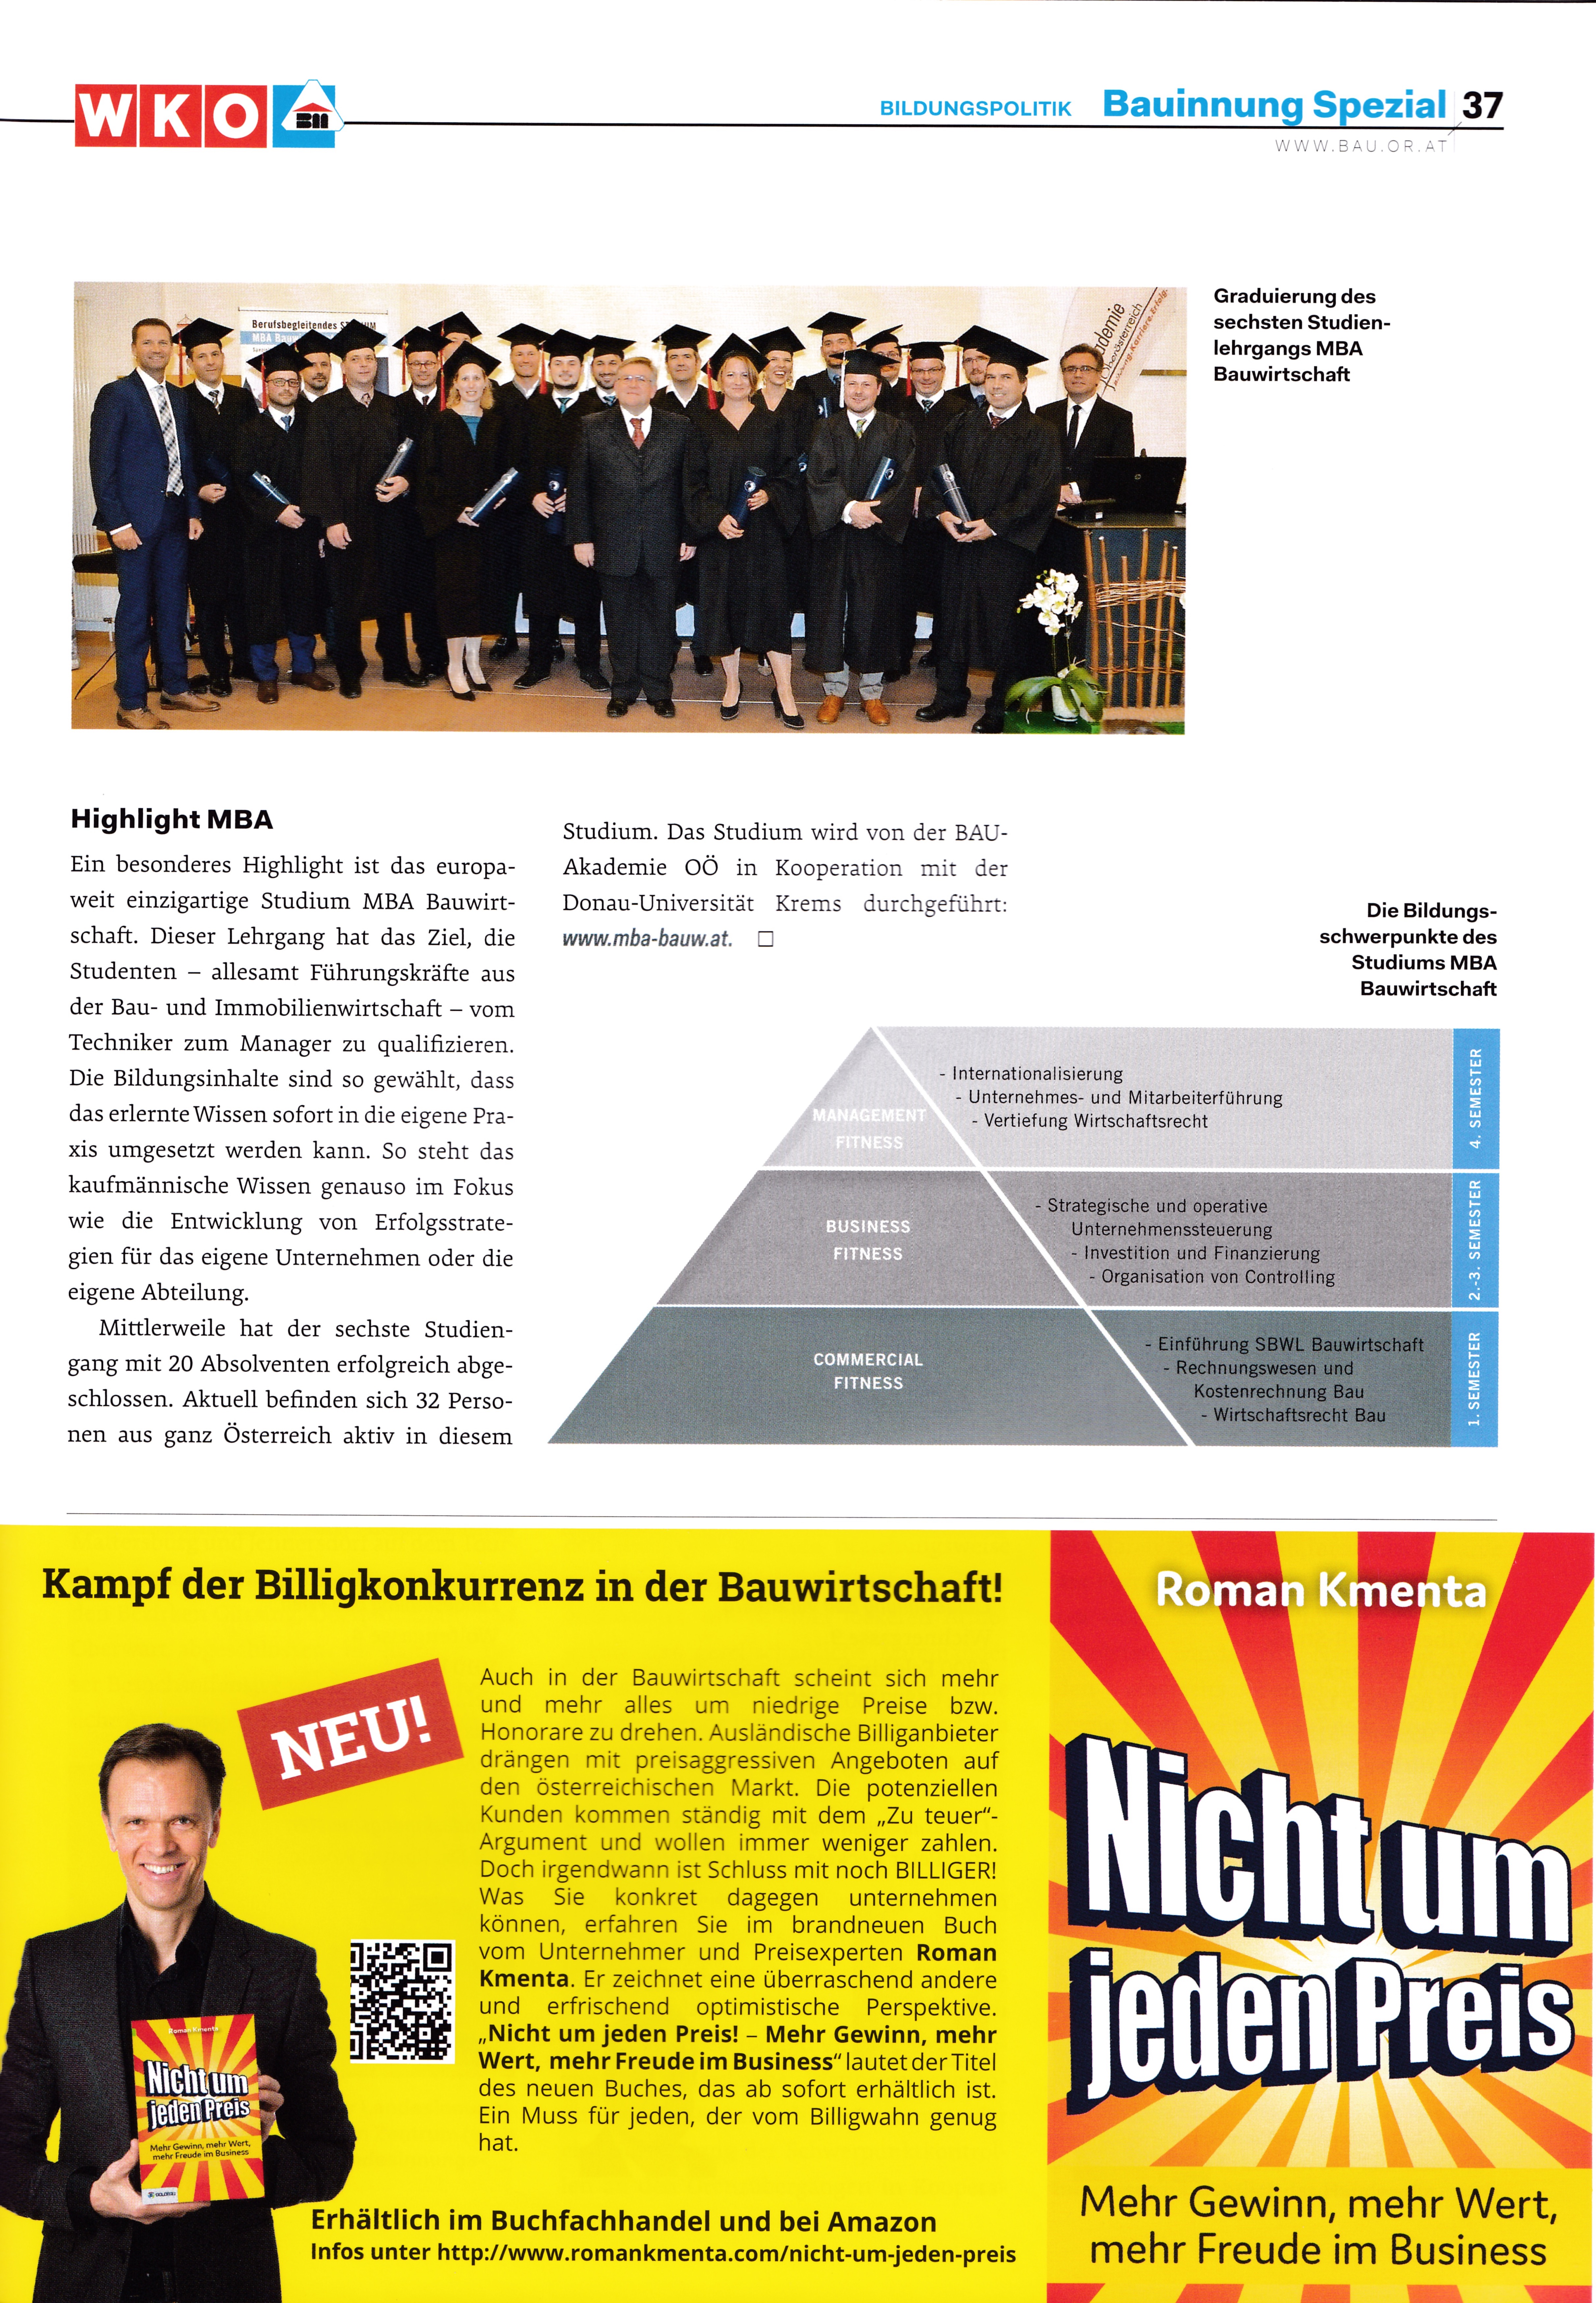 Österreichische Bauzeitung - Buch Nicht um jeden Preis - Roman Kmenta - Unternehmer und Keynote Speaker